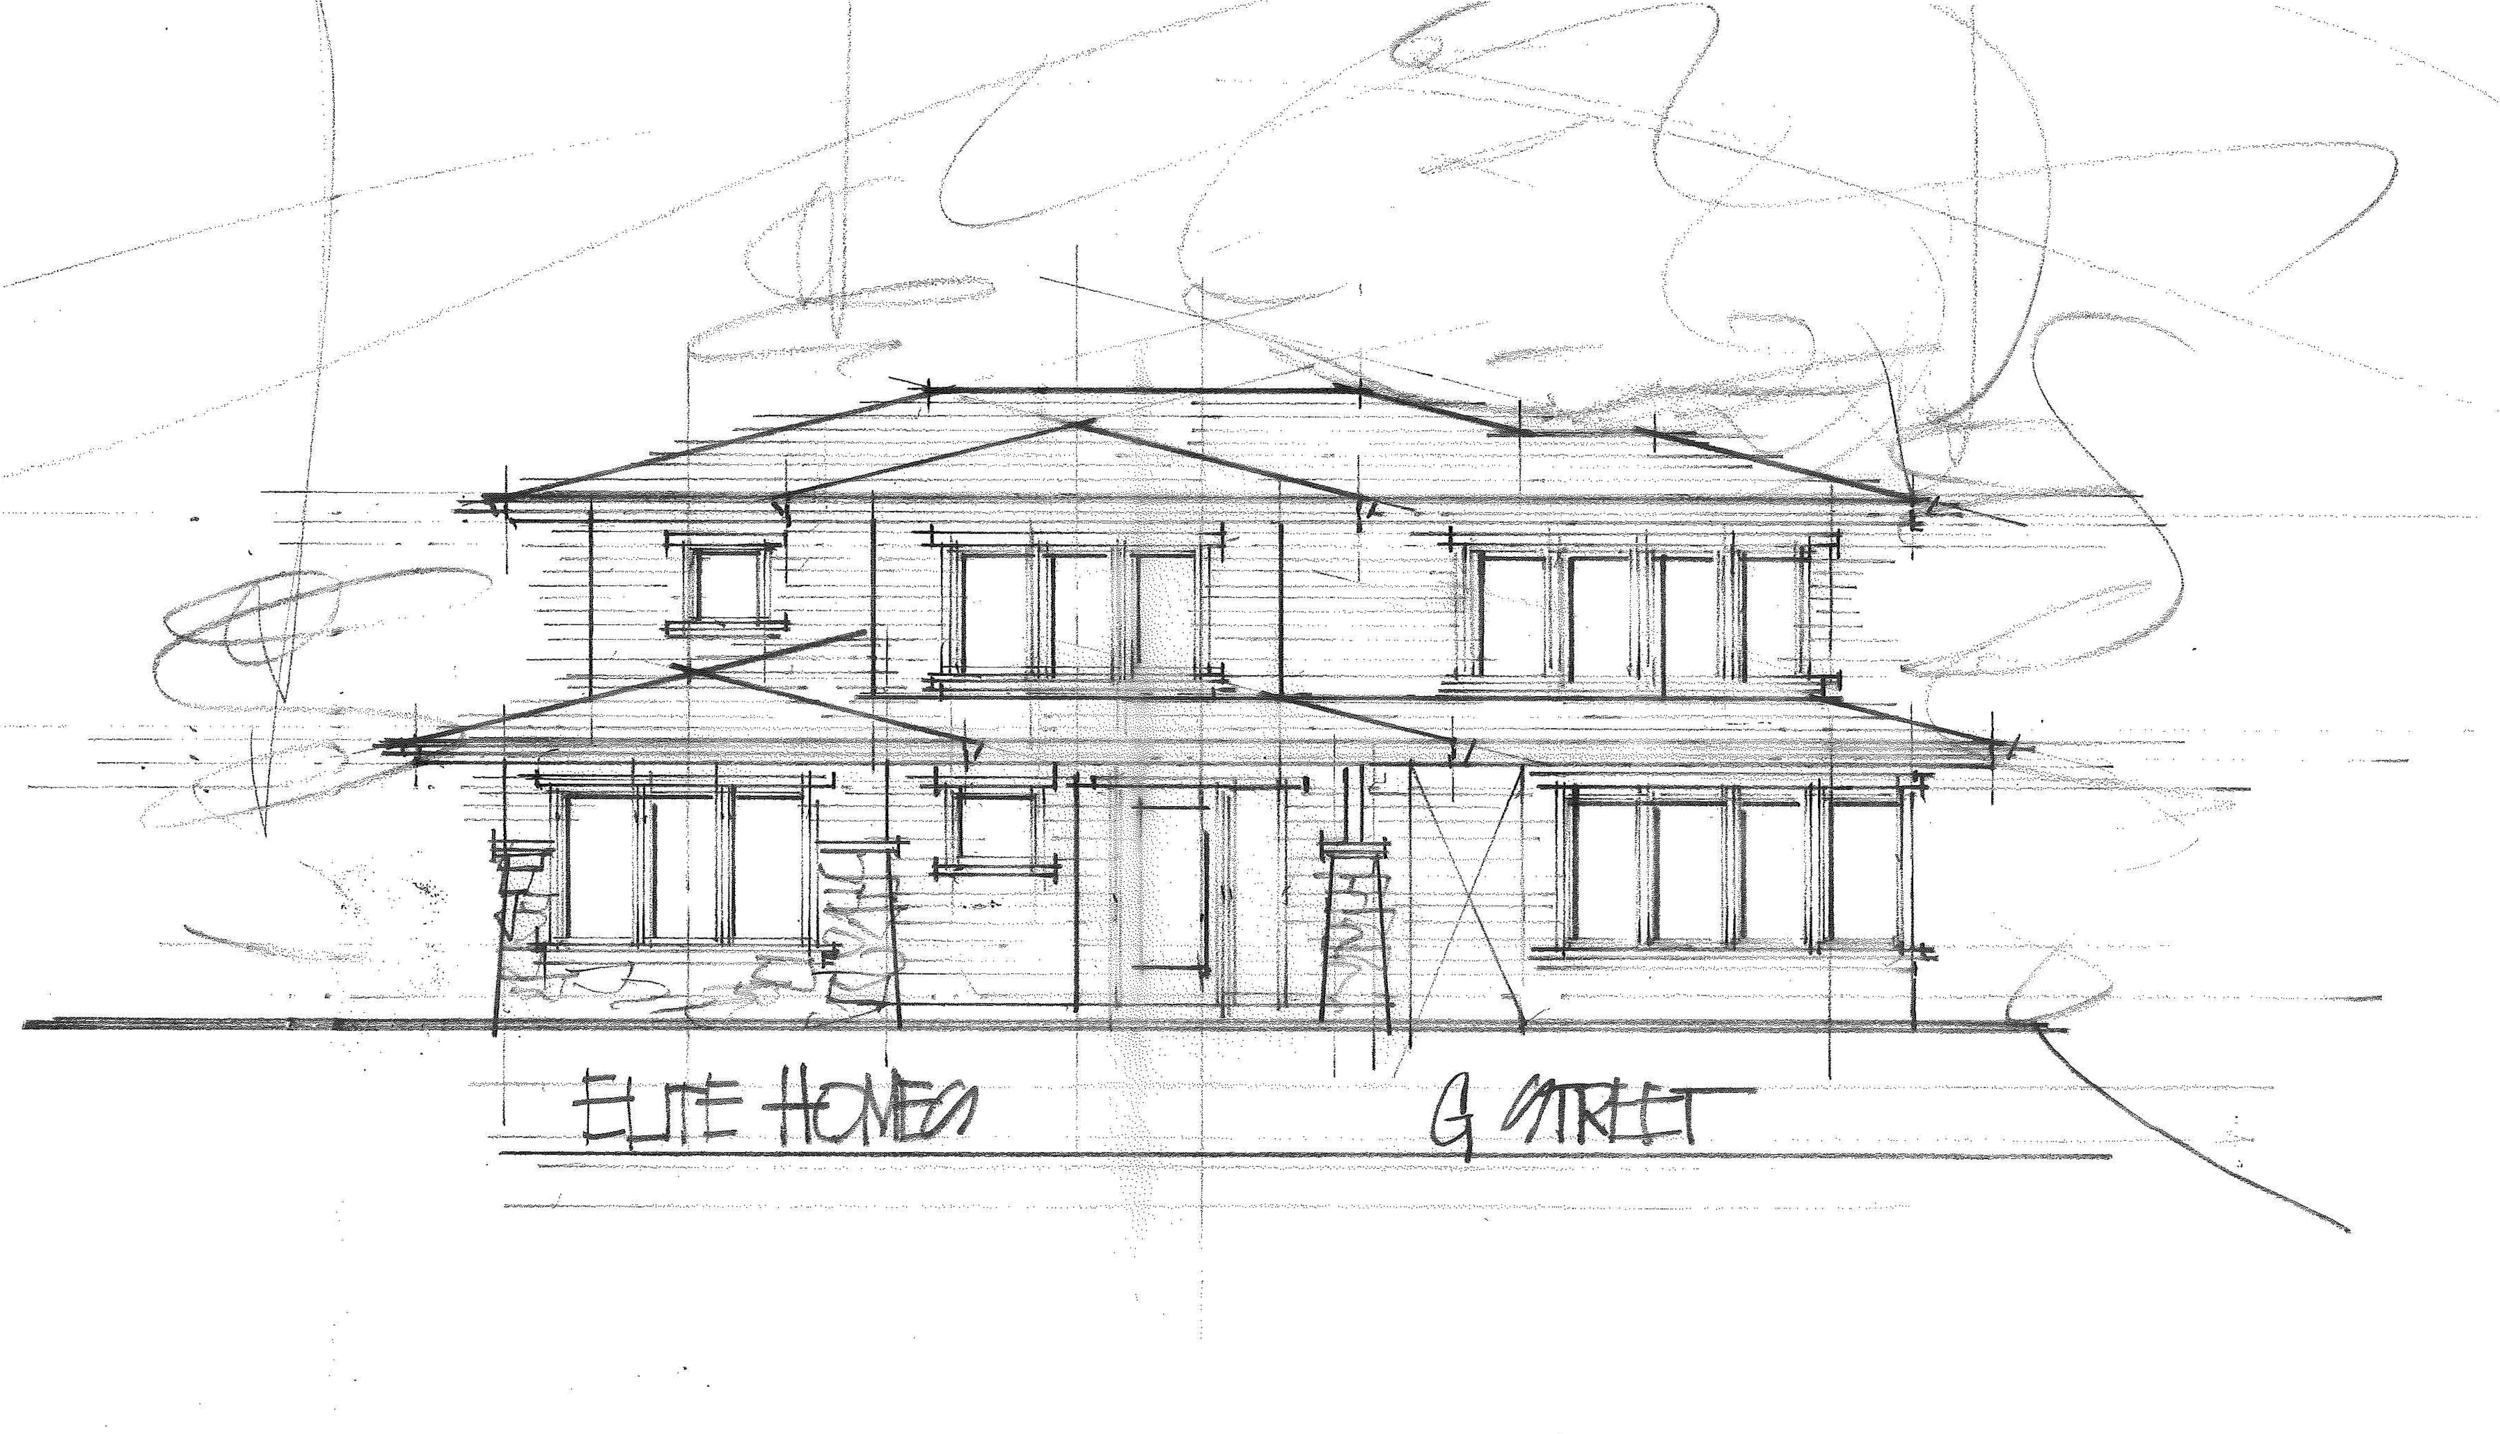 Custom design for Elite Homes